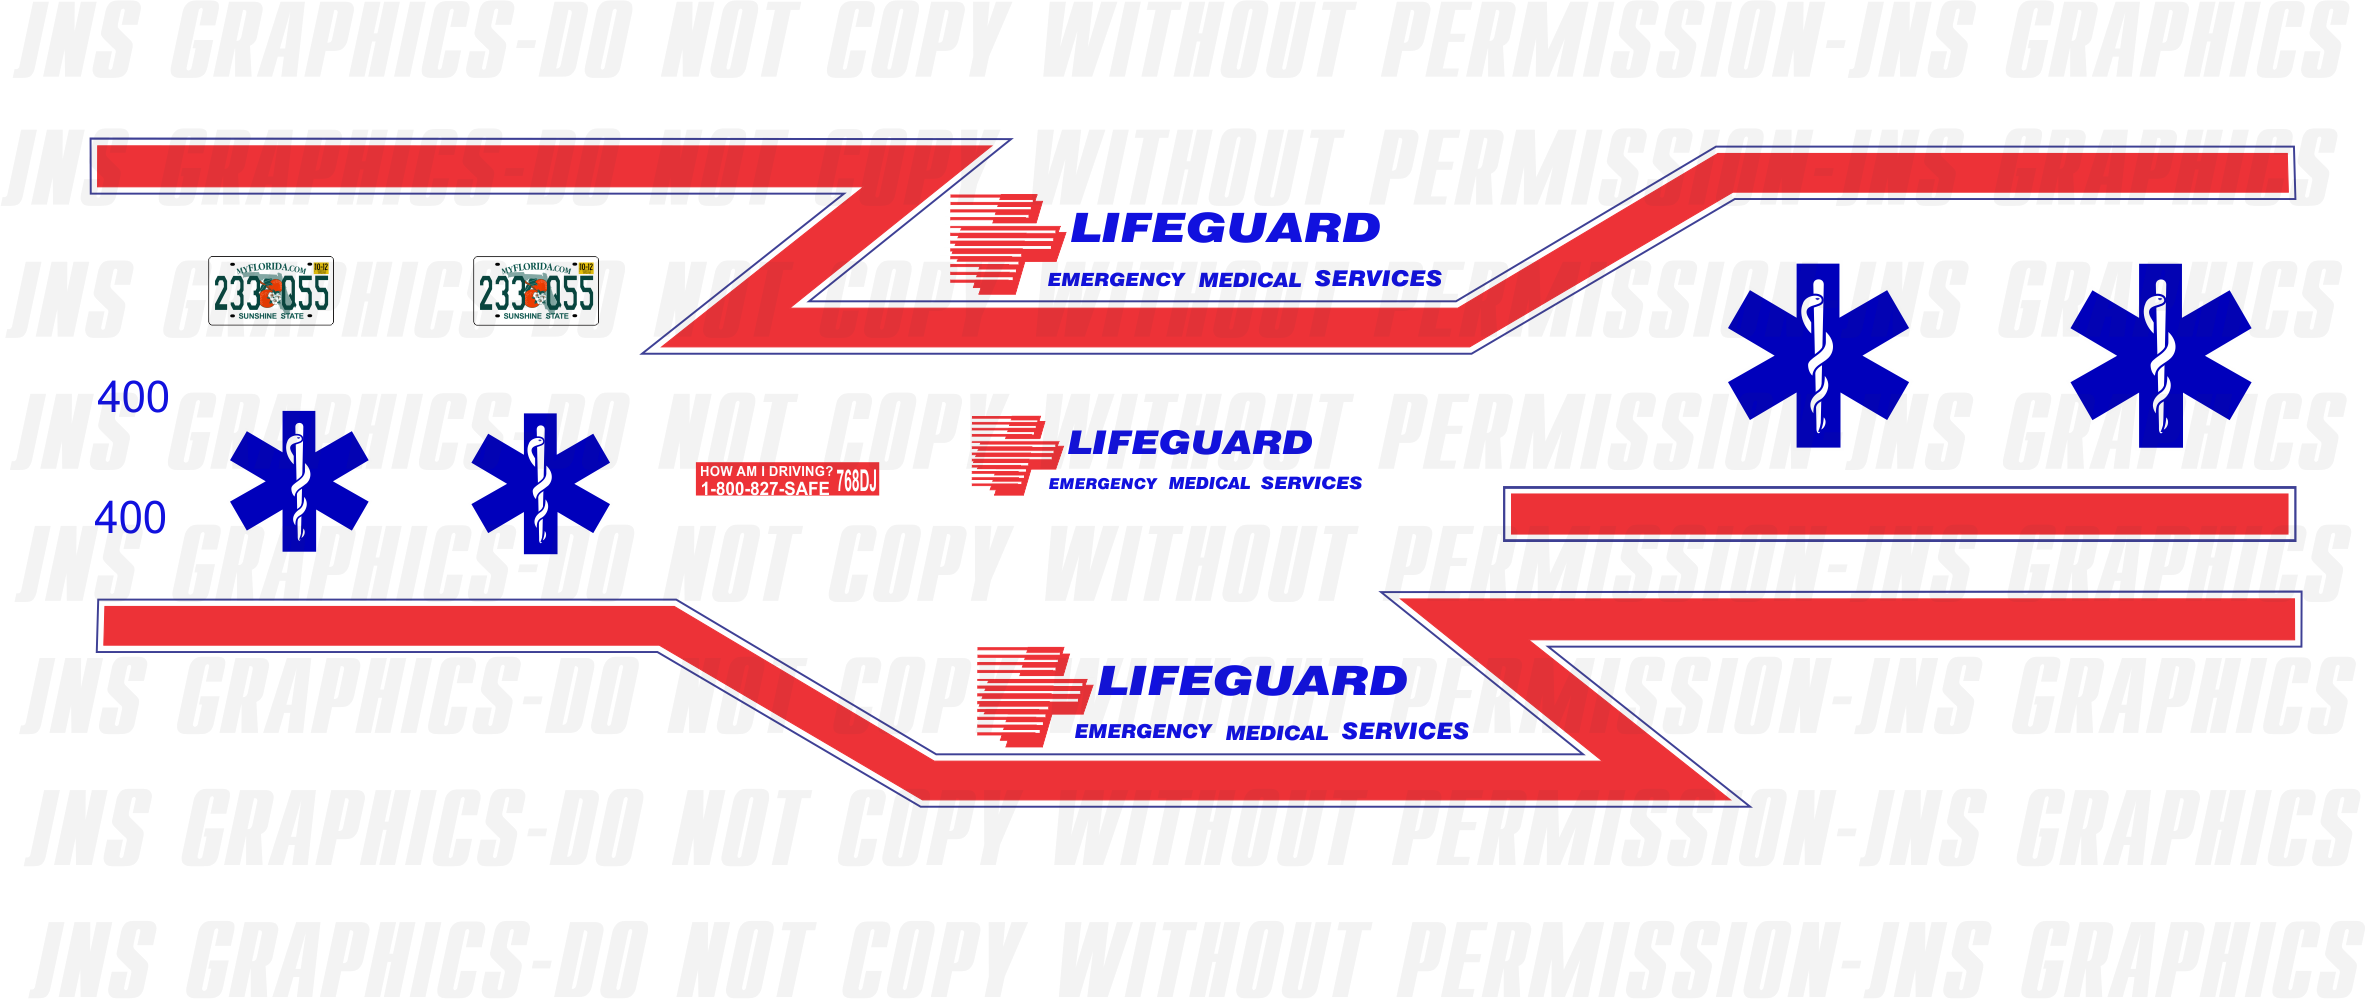 1/24-1/25 Lifeguard EMS